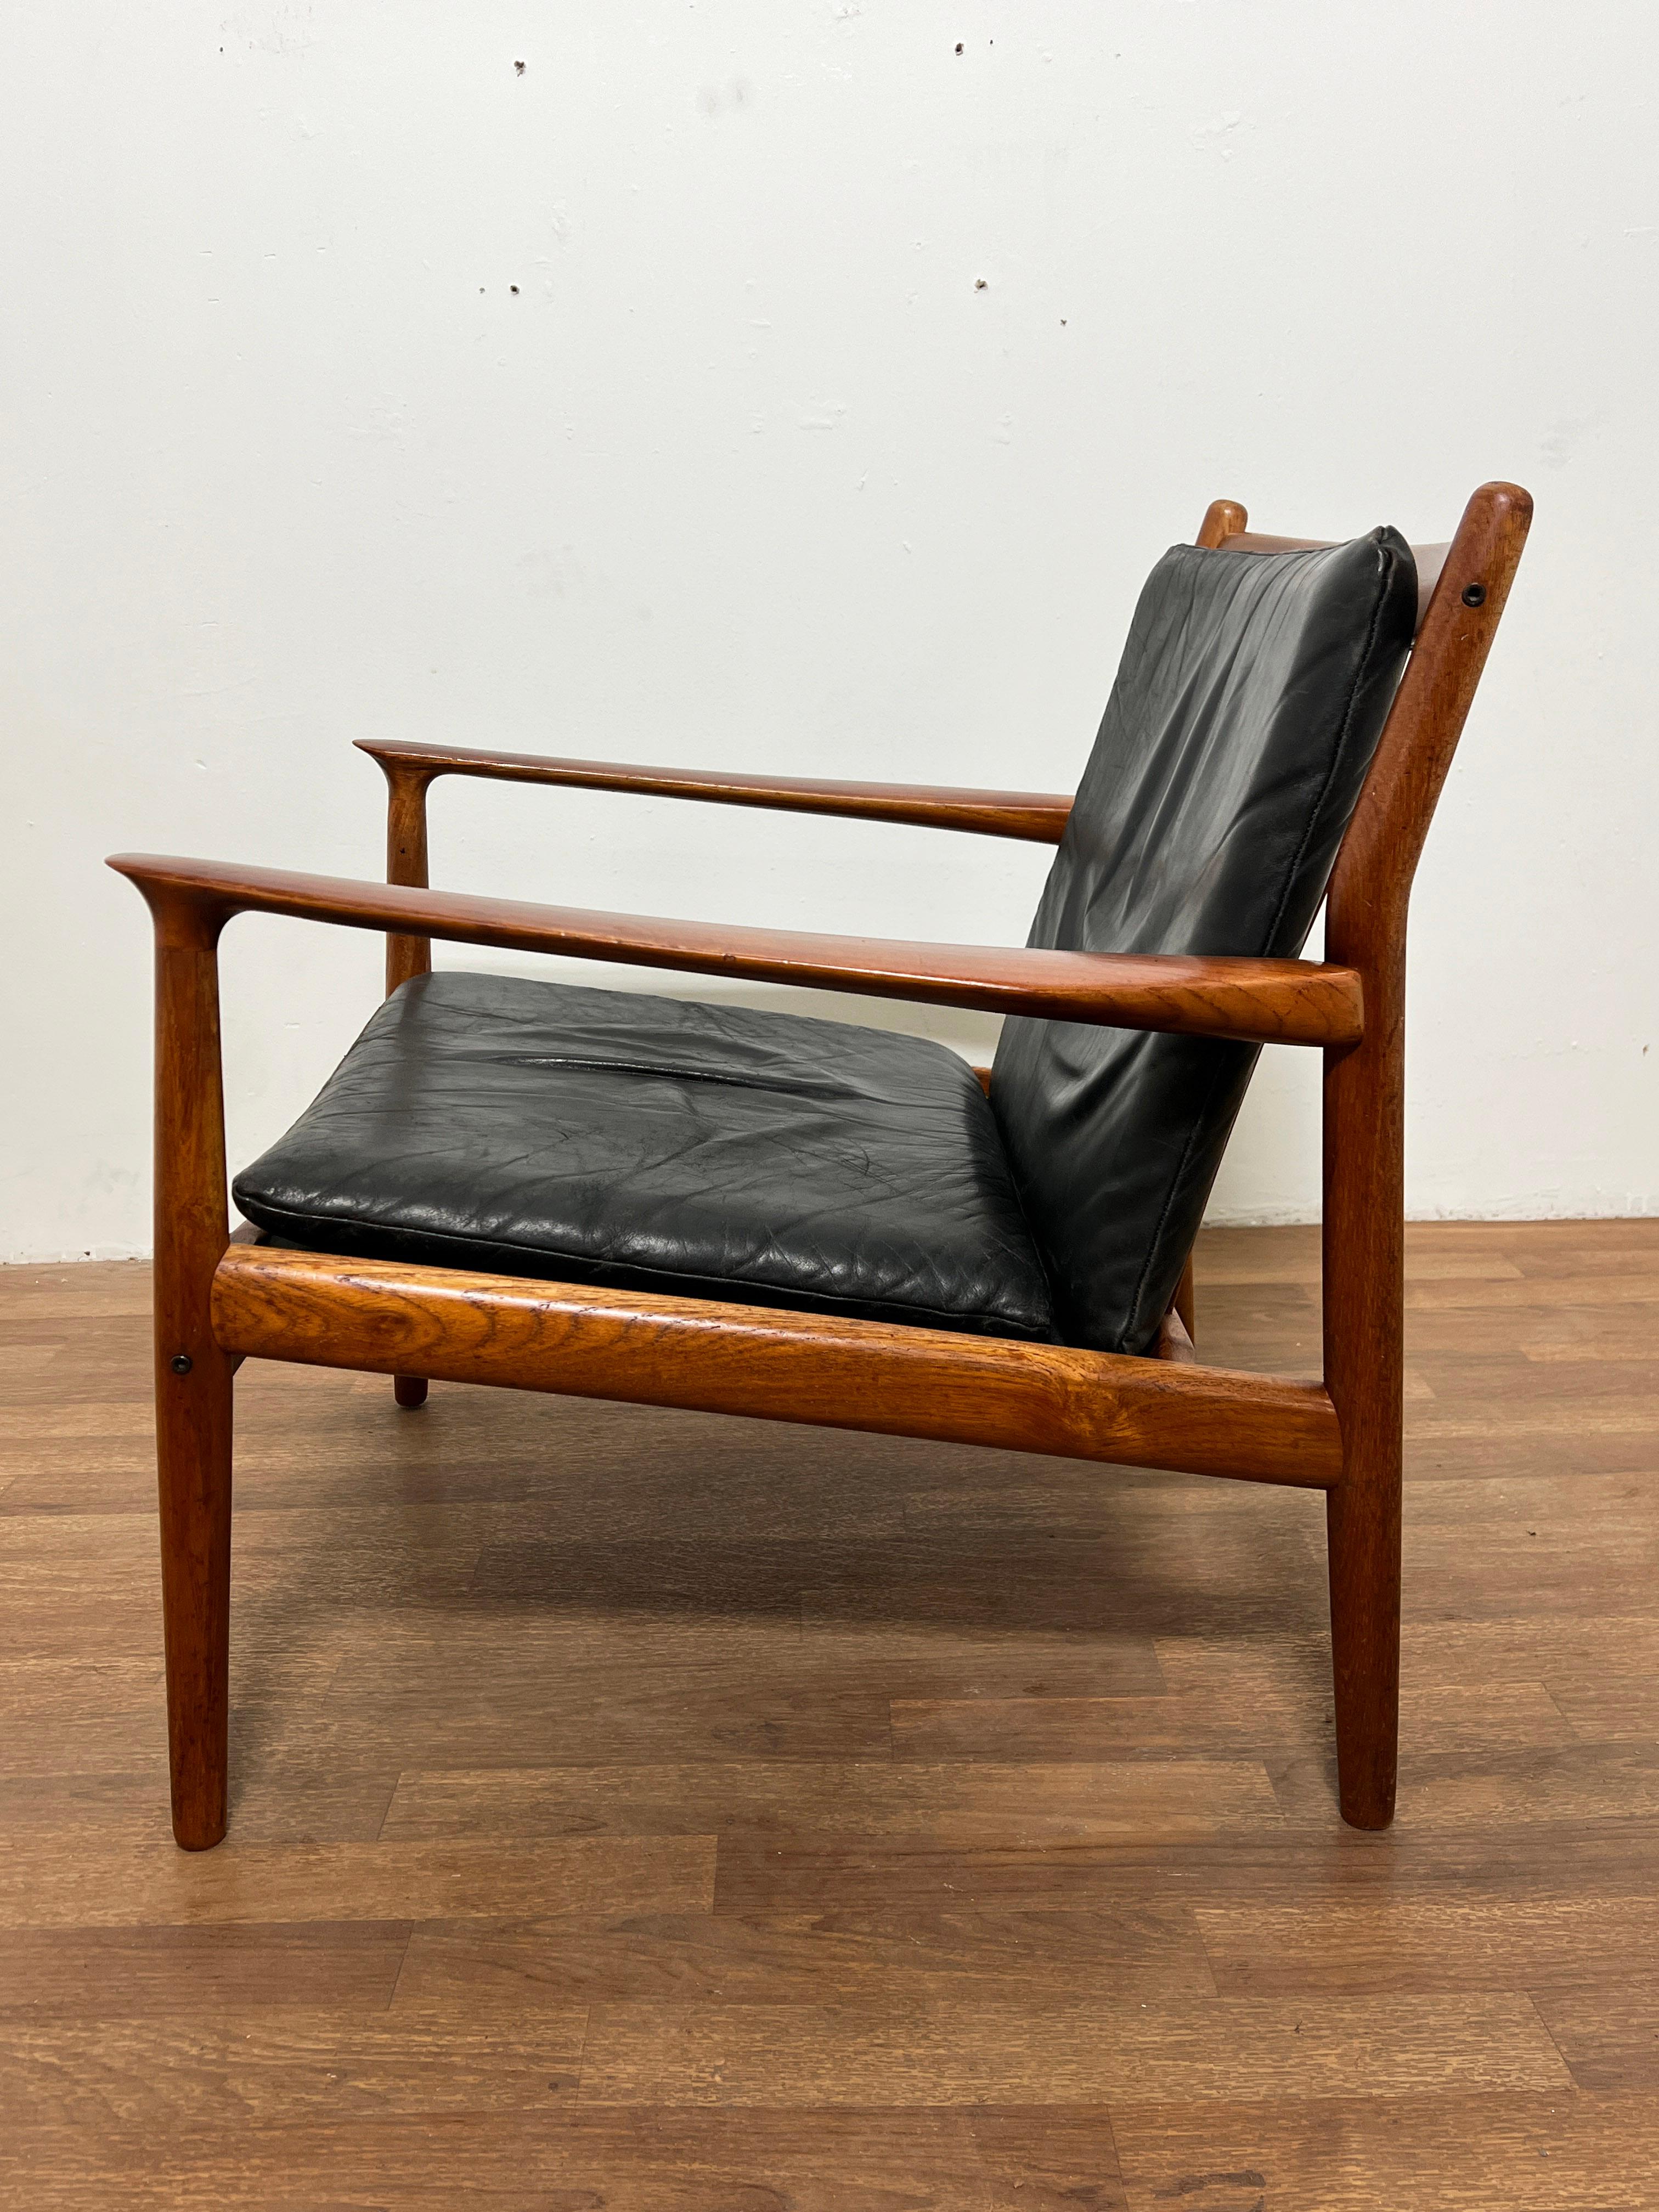 Ein dänischer Loungesessel aus Teakholz mit originaler weicher Lederpolsterung, entworfen von Svend Aage Eriksen für die Glostrup Mobelfabrik, in Anlehnung an Grete Jalk, die ebenfalls für Glostrup entwarf.

A passend  Das dreisitzige Sofa ist in